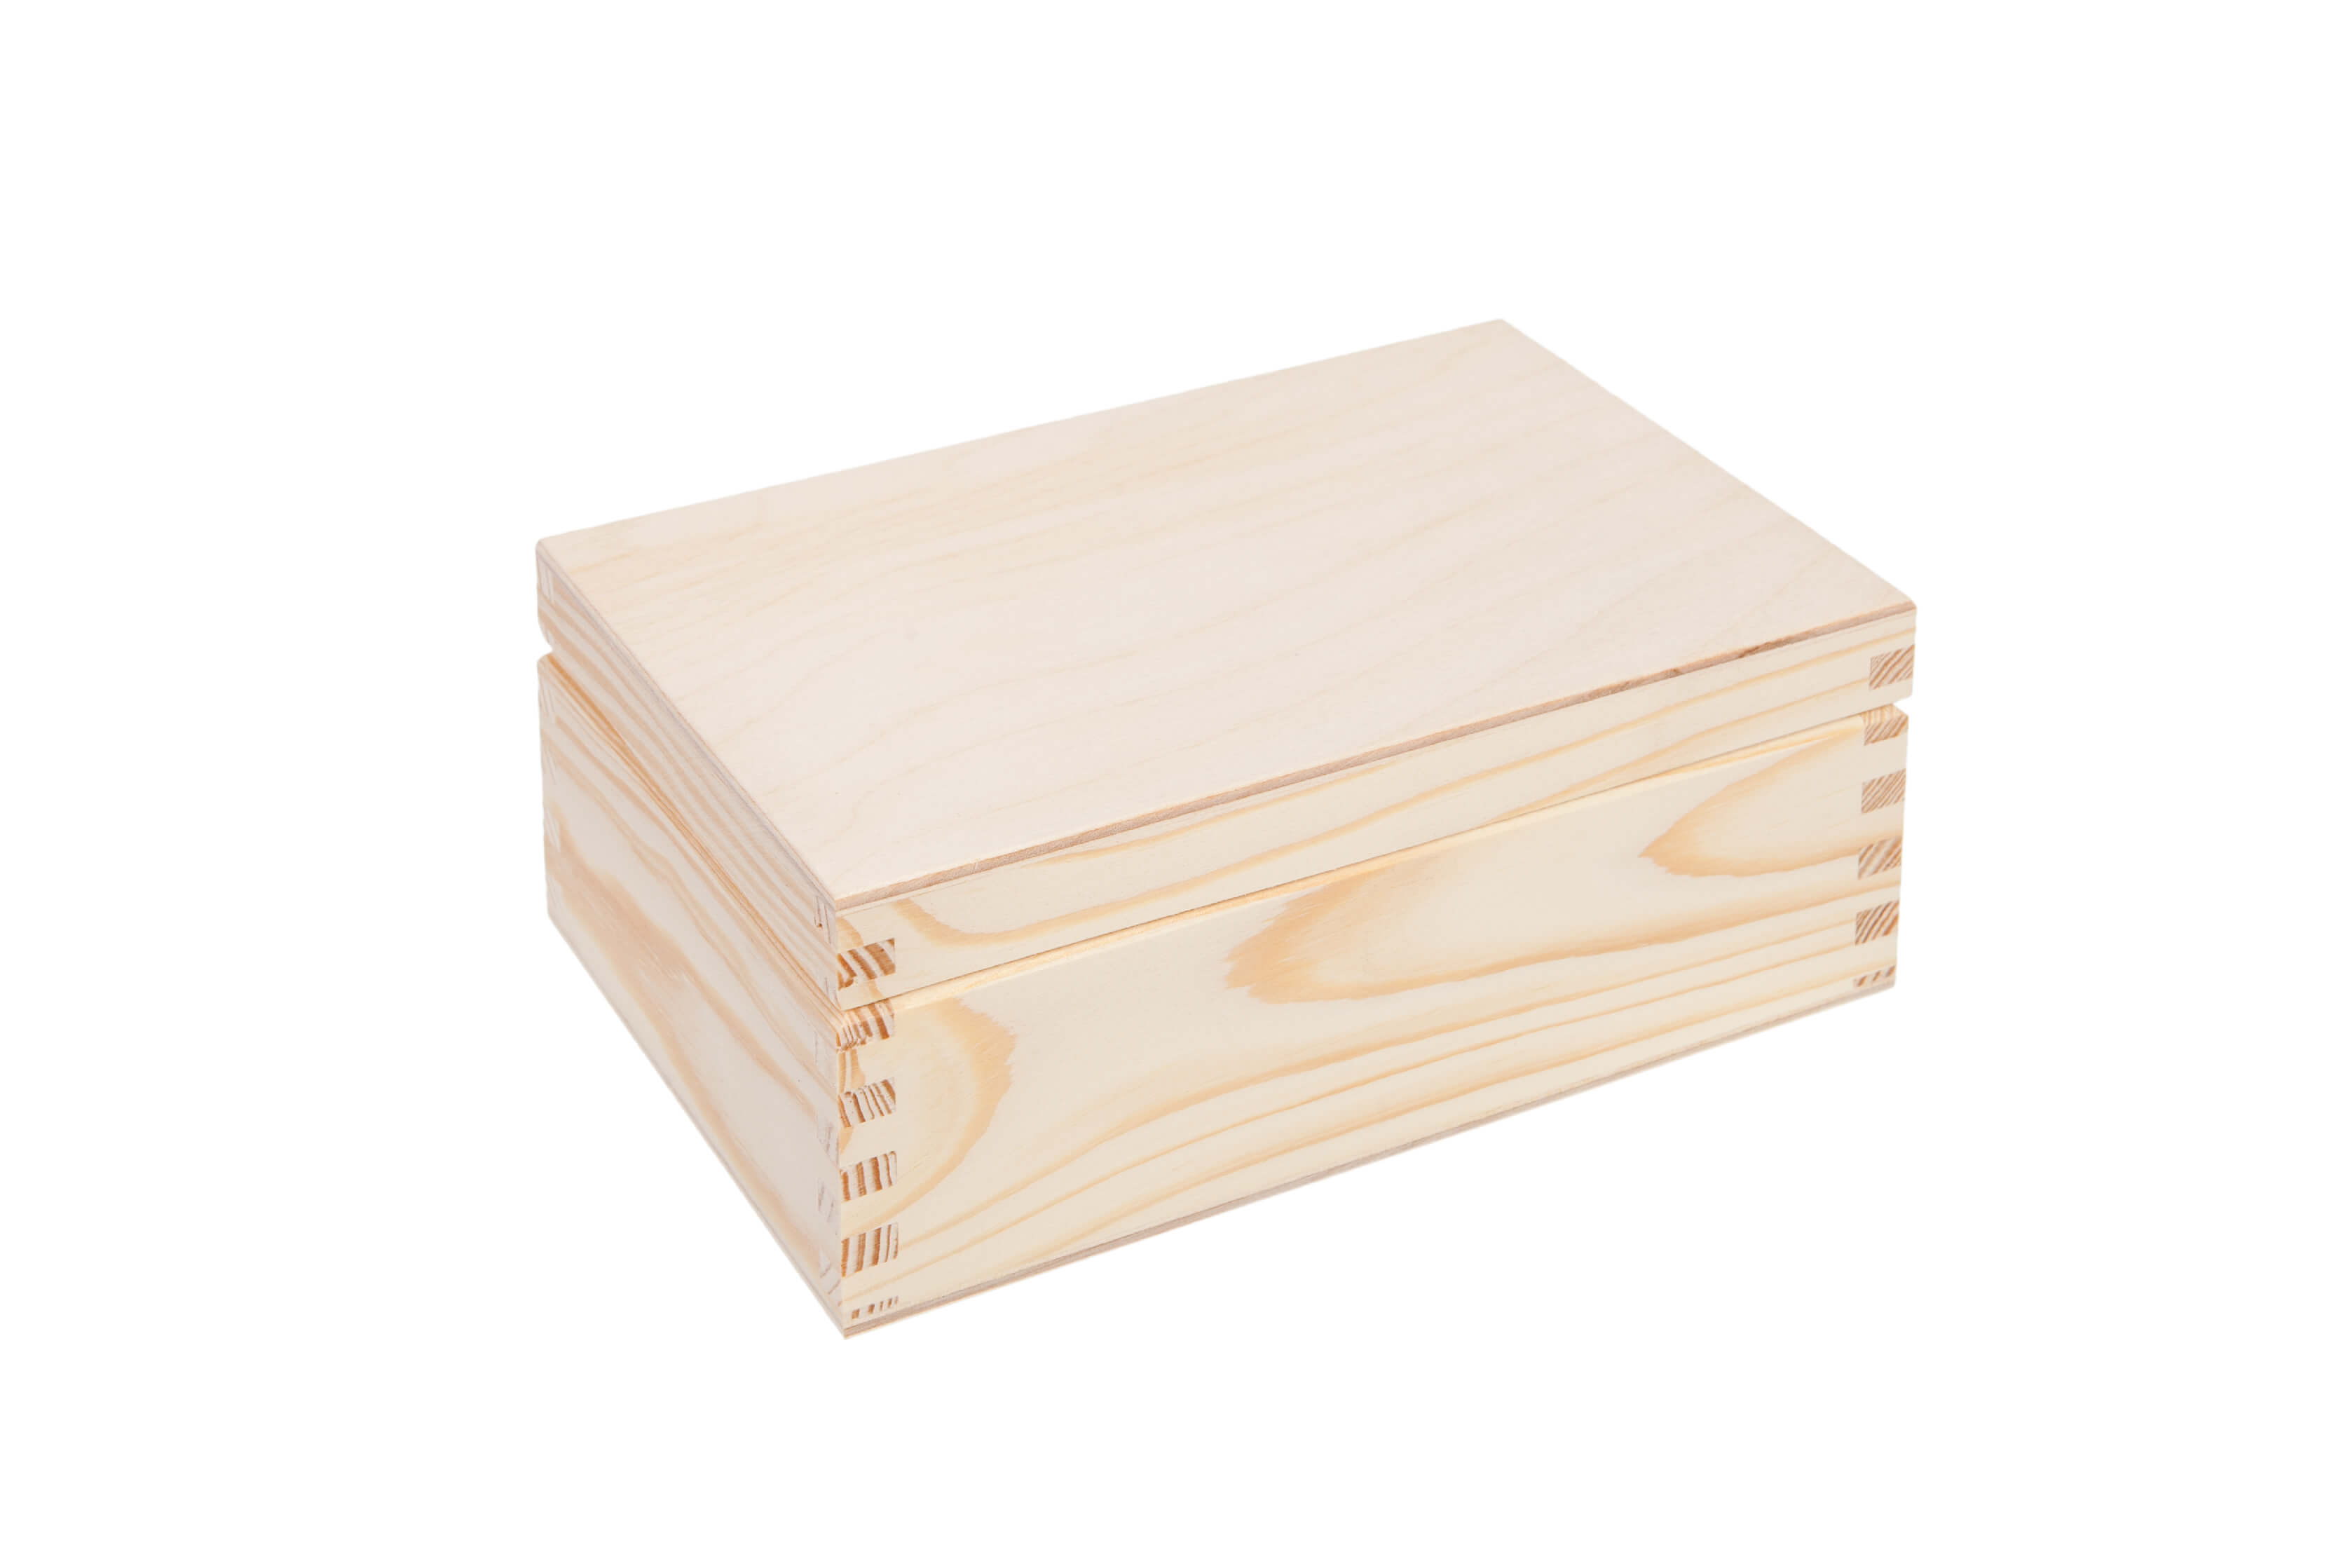 Pudełko drewniane prostokątne 14x8cm PU0042